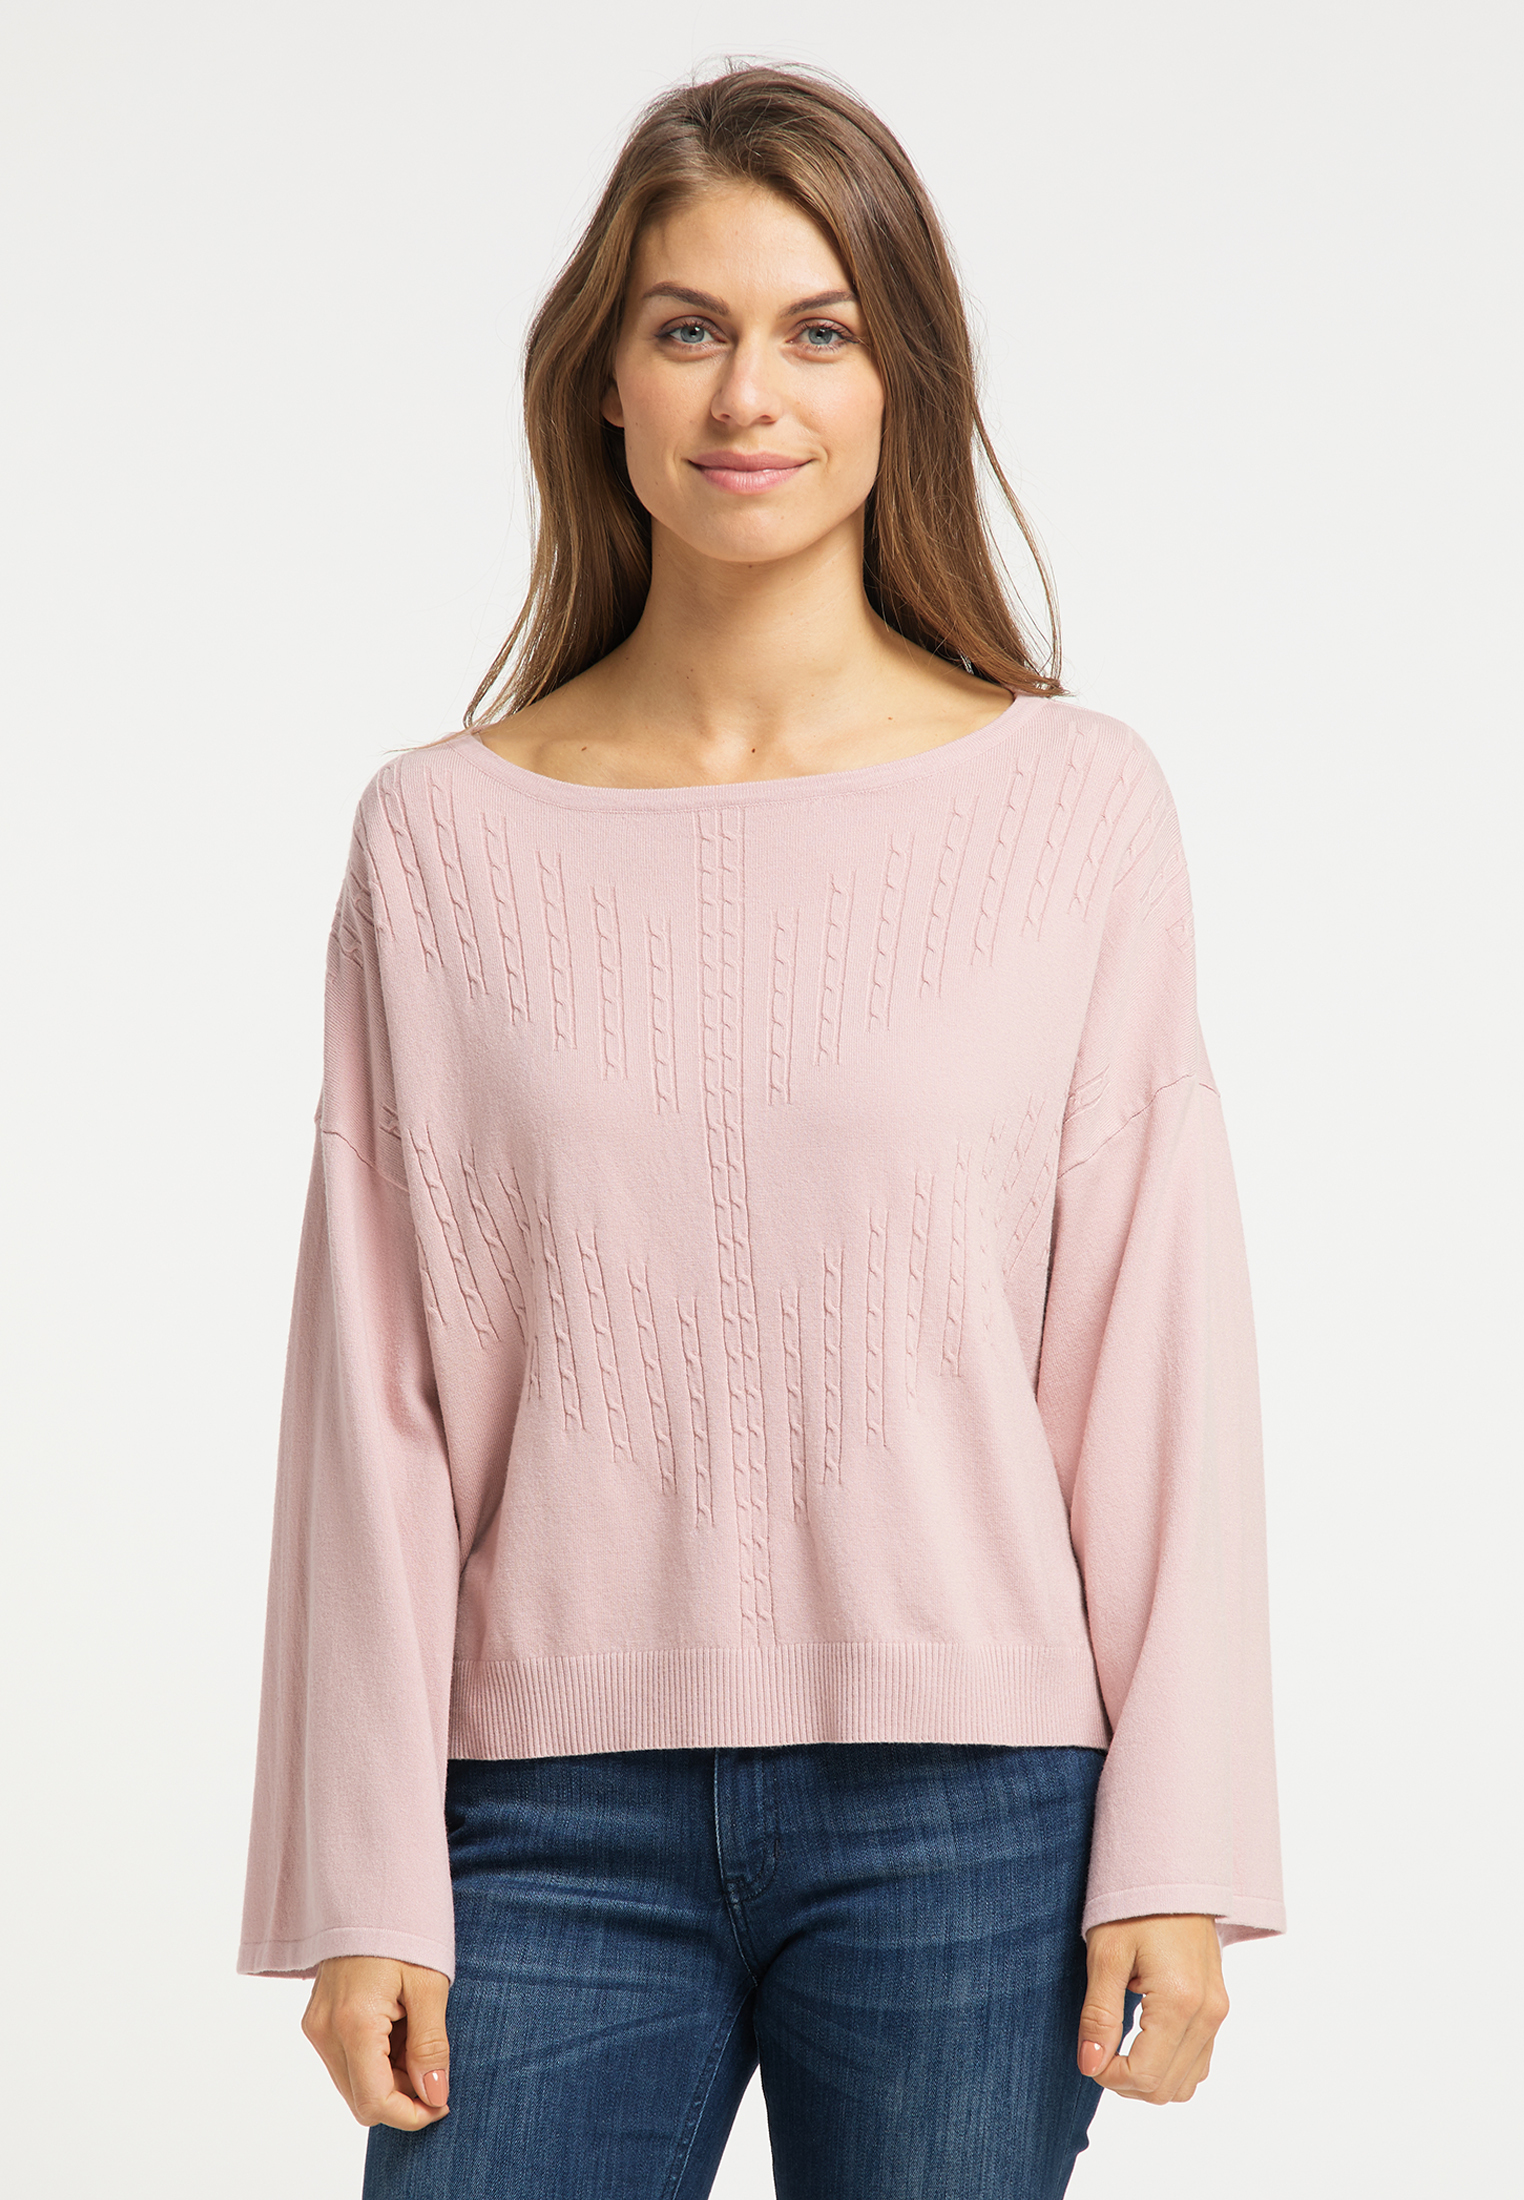 Swetry & dzianina Kobiety Usha Sweter w kolorze Różowy Pudrowym 